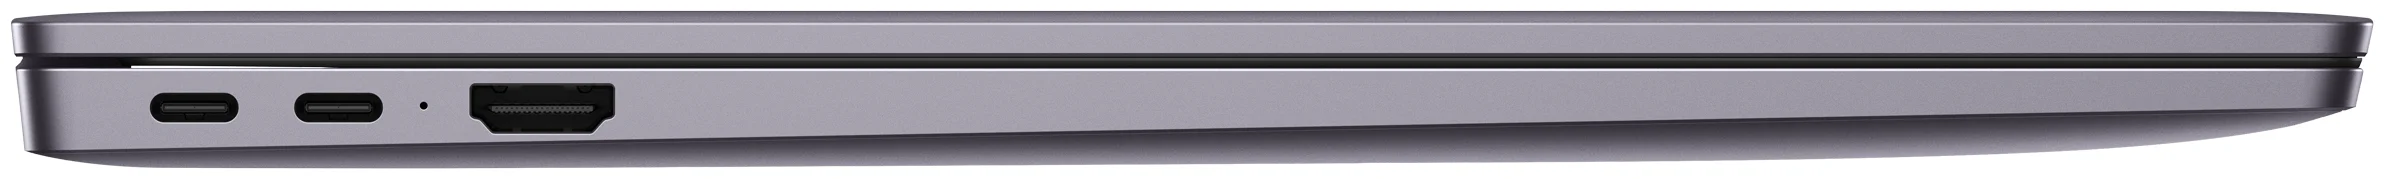 16.1" HUAWEI MateBook D16 - видеокарта: встроенная, AMD Radeon Graphics